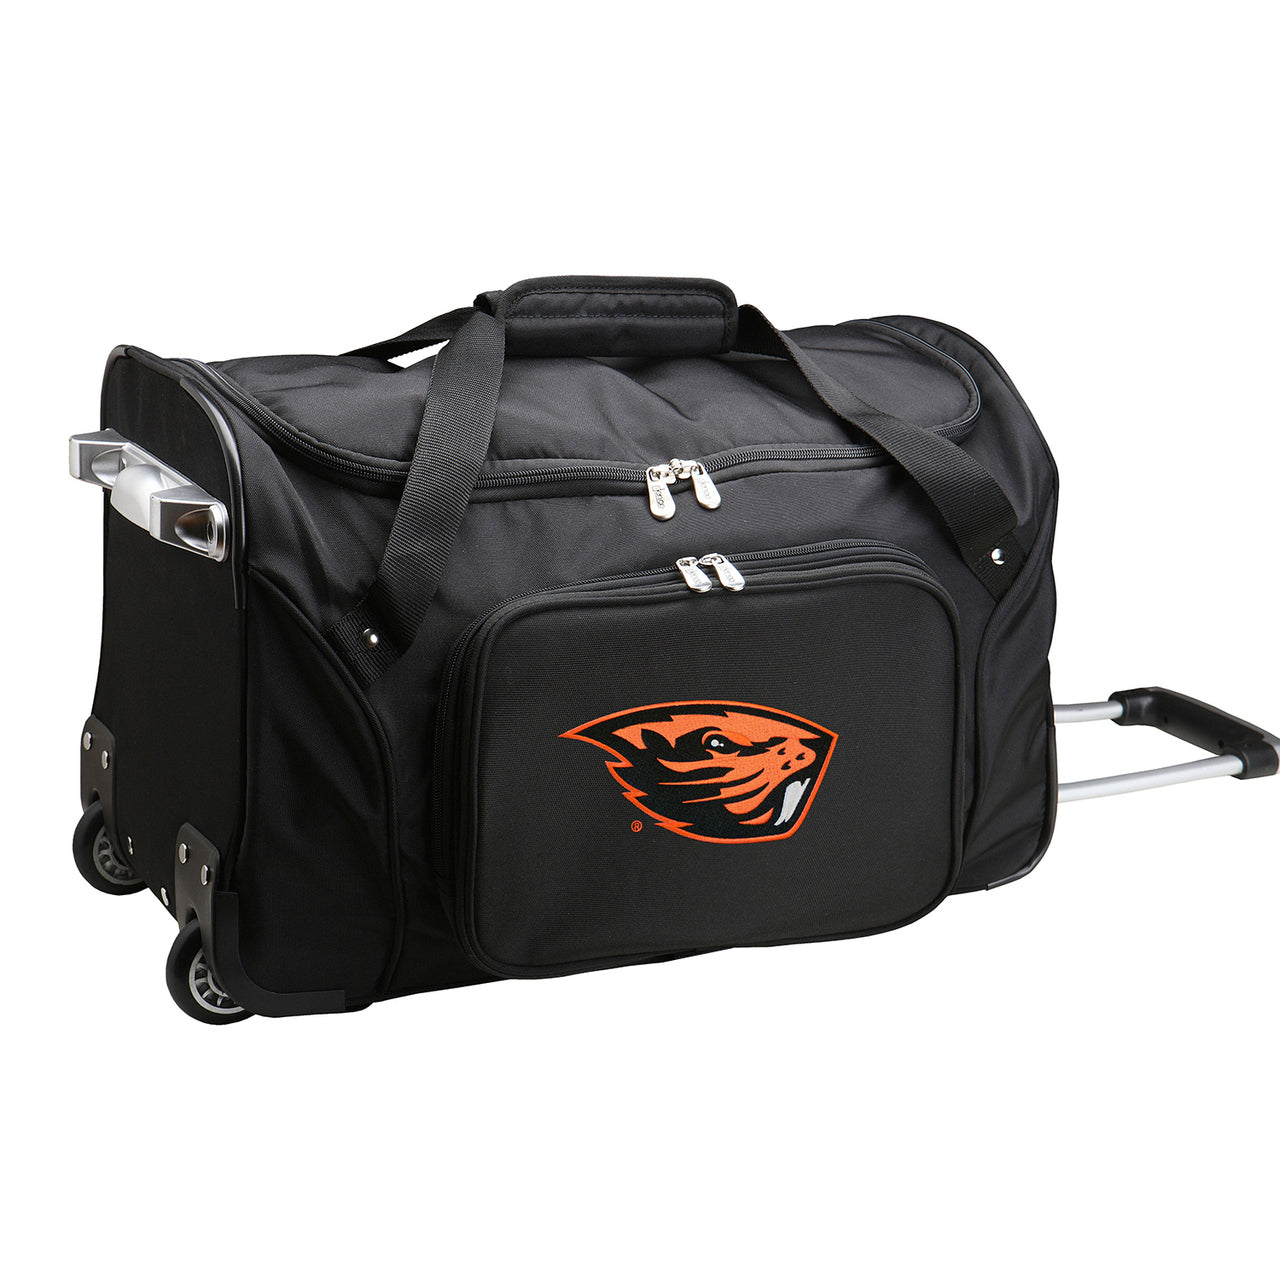 Oregon State Beavers Luggage | Oregon State Beavers Wheeled Carry On Luggage